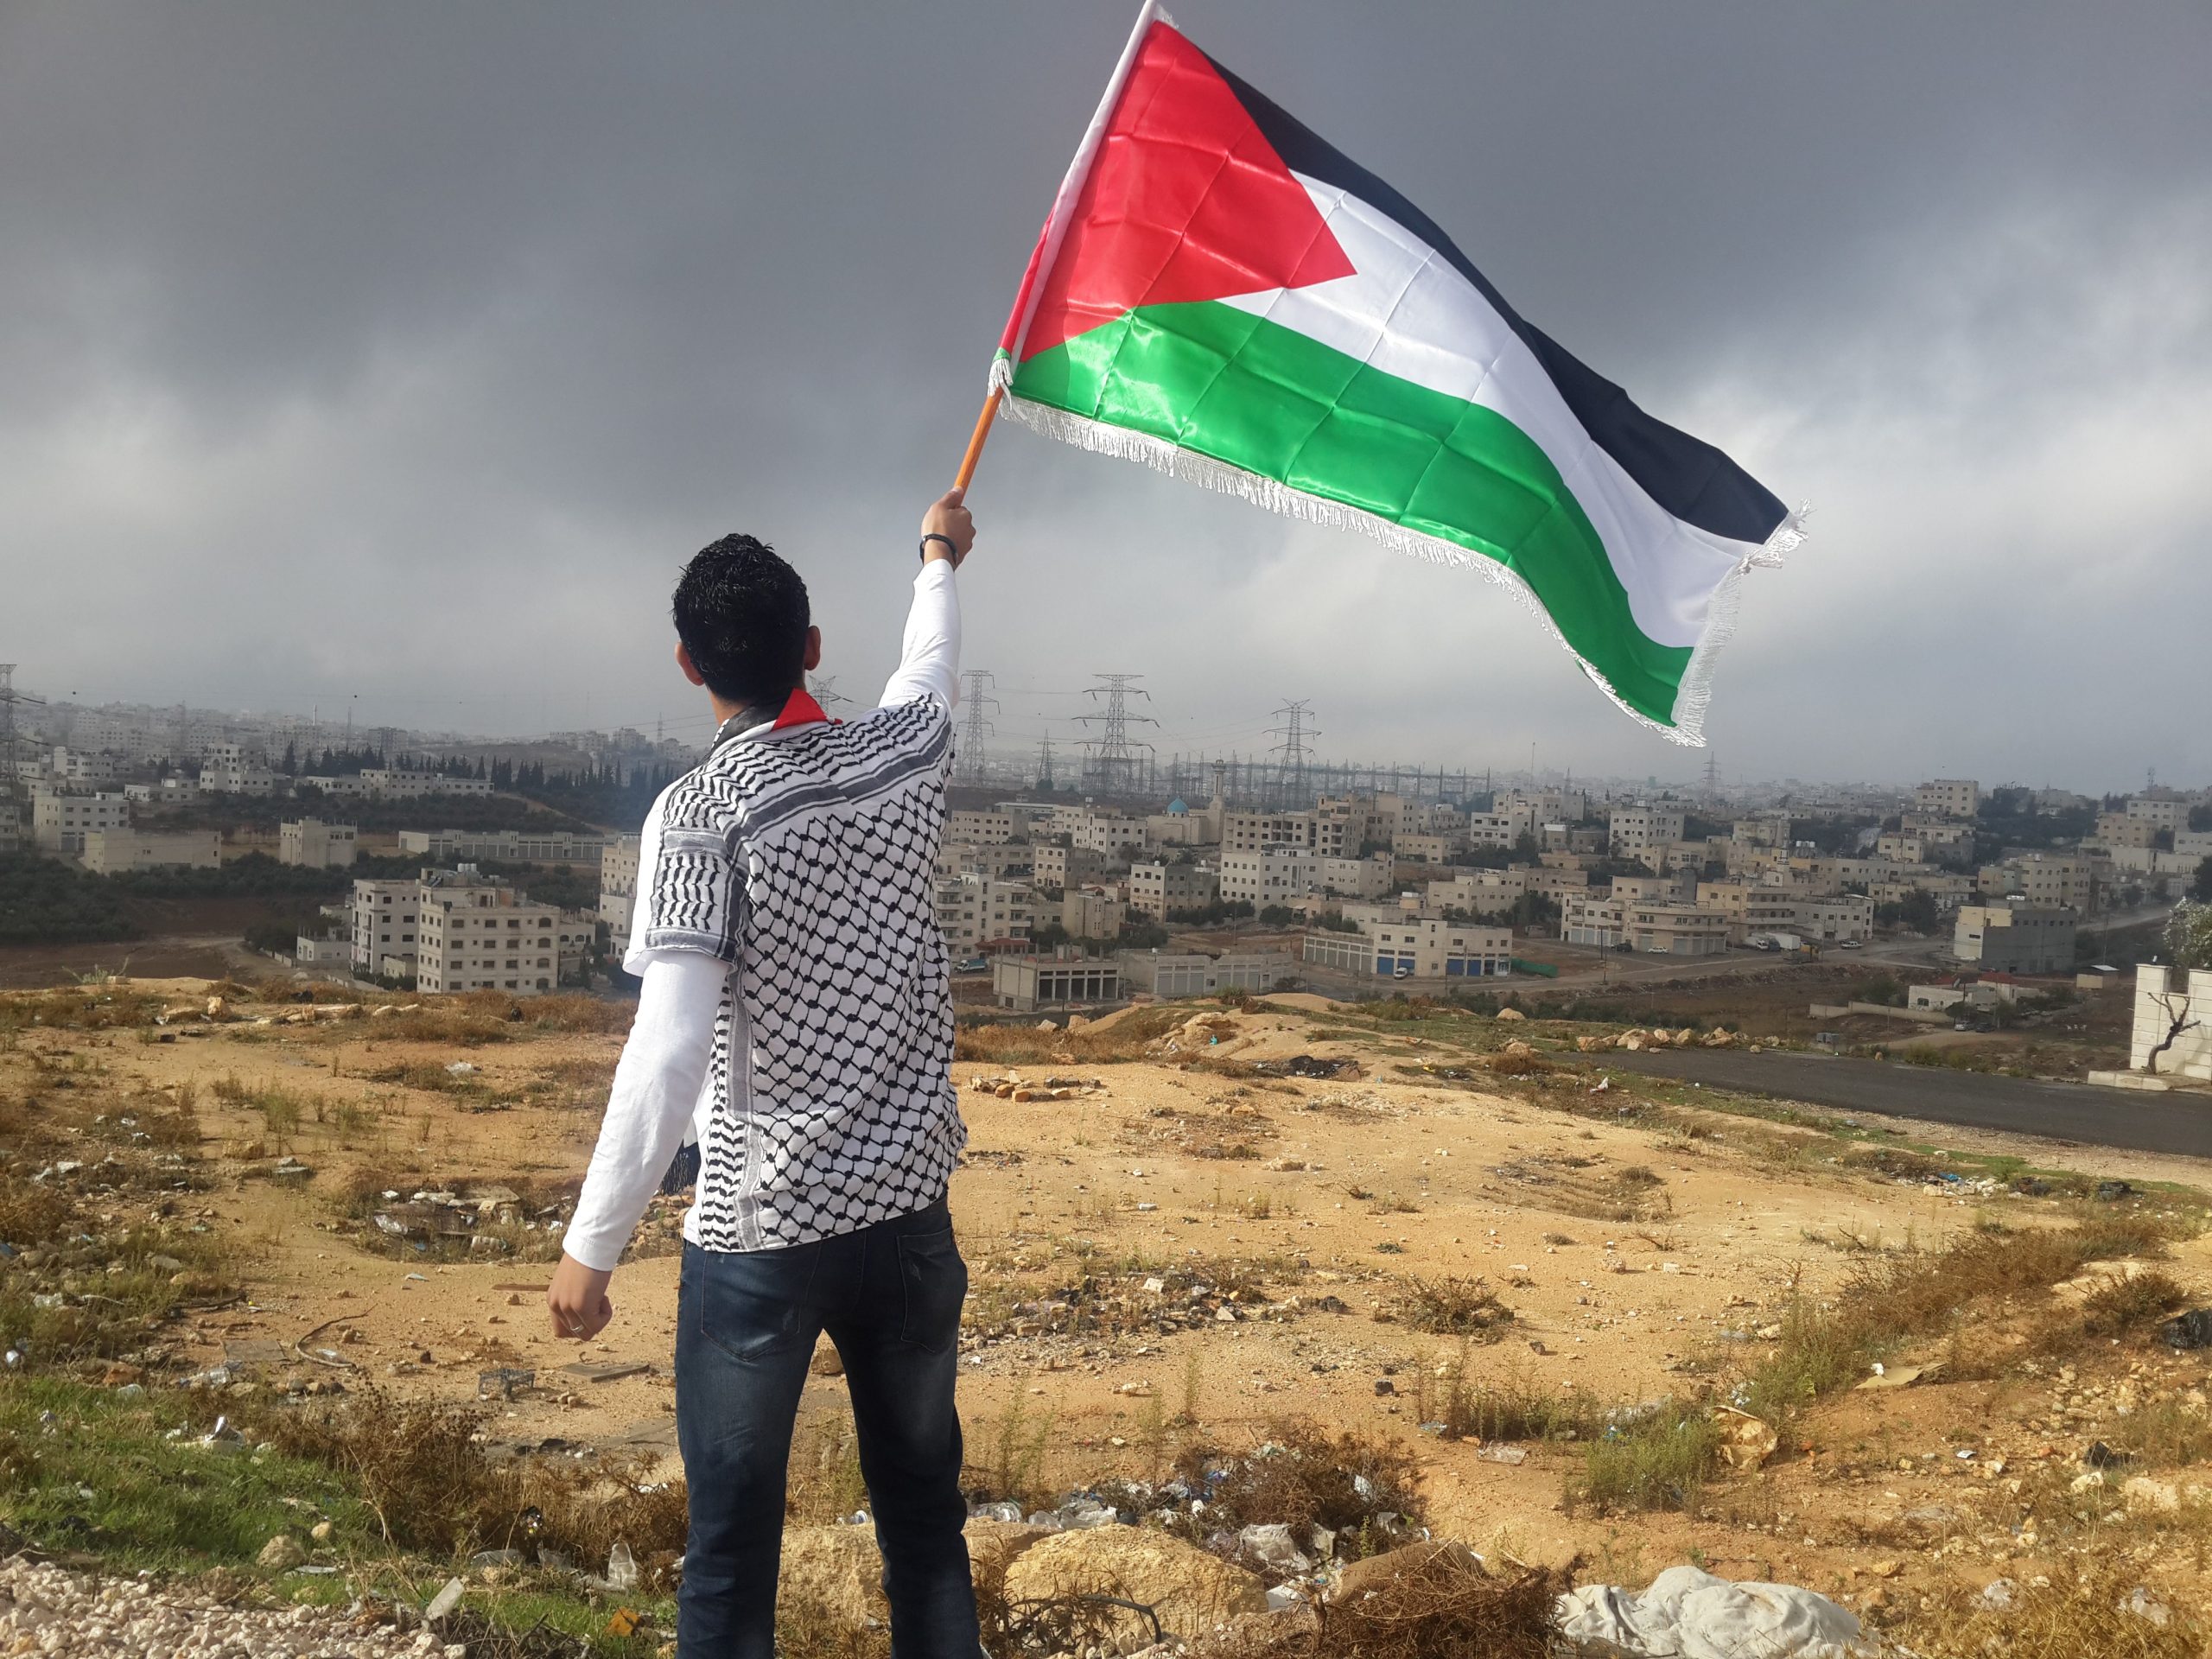 Israel imposes apartheid over Palestine: Media figure